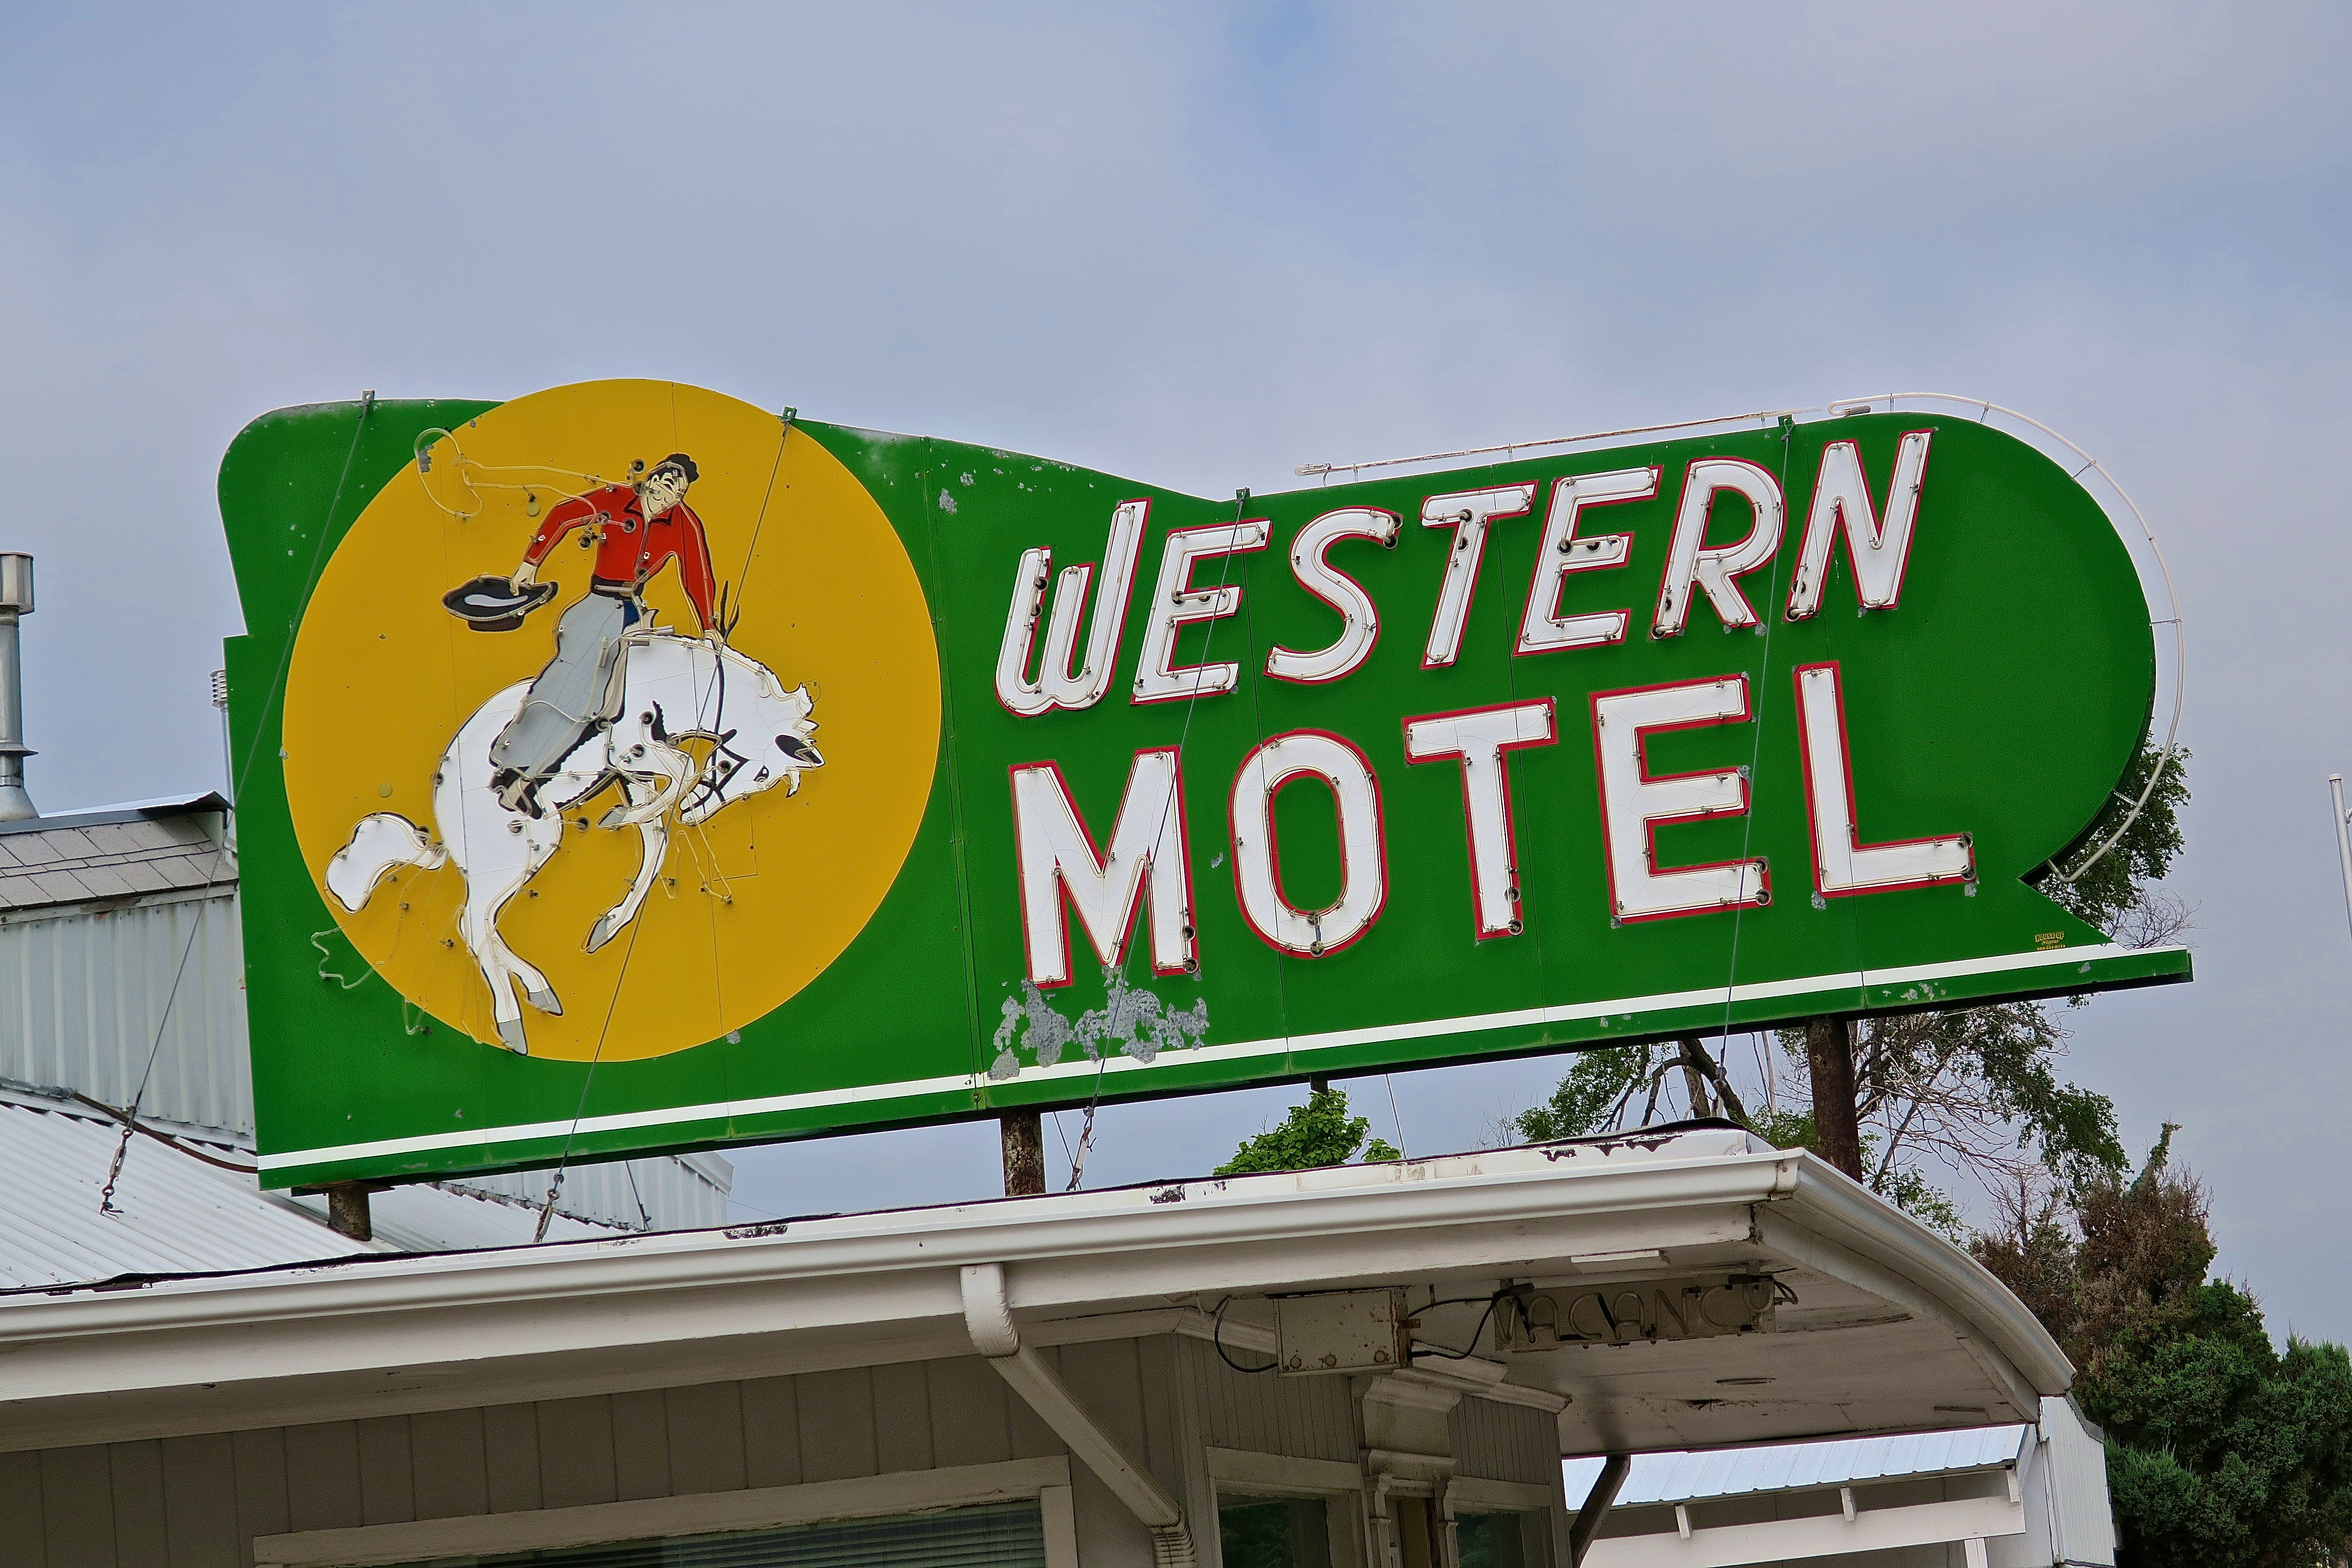 Western Motel - 706 West Rodeo Road Avenue, North Platte, Nebraska U.S.A. - July 4, 2016